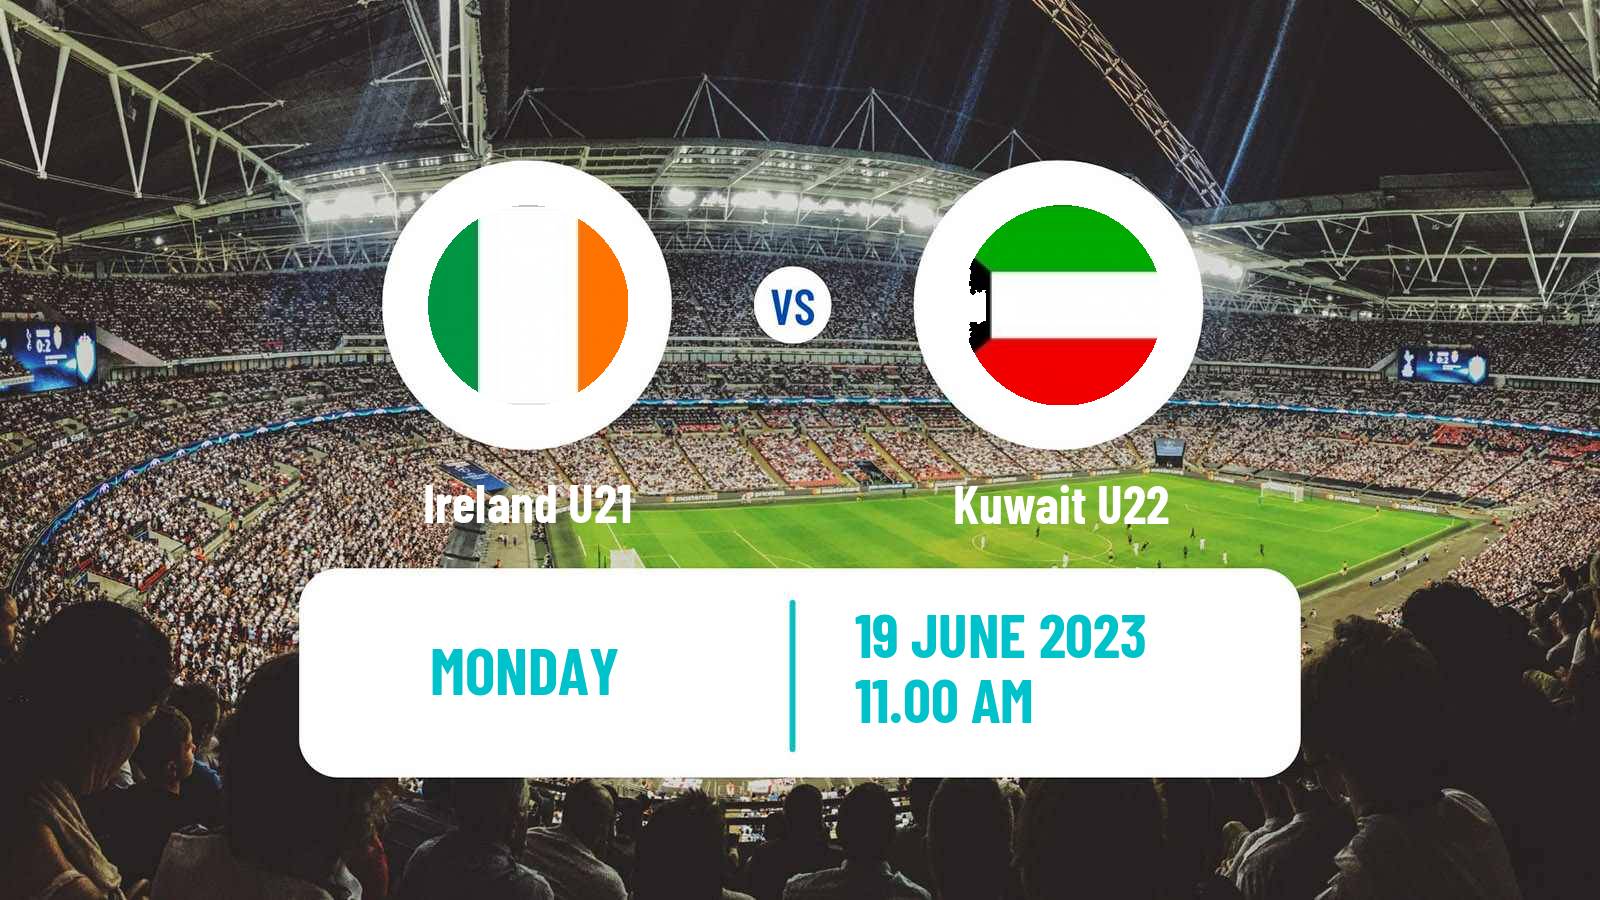 Soccer Friendly Ireland U21 - Kuwait U22